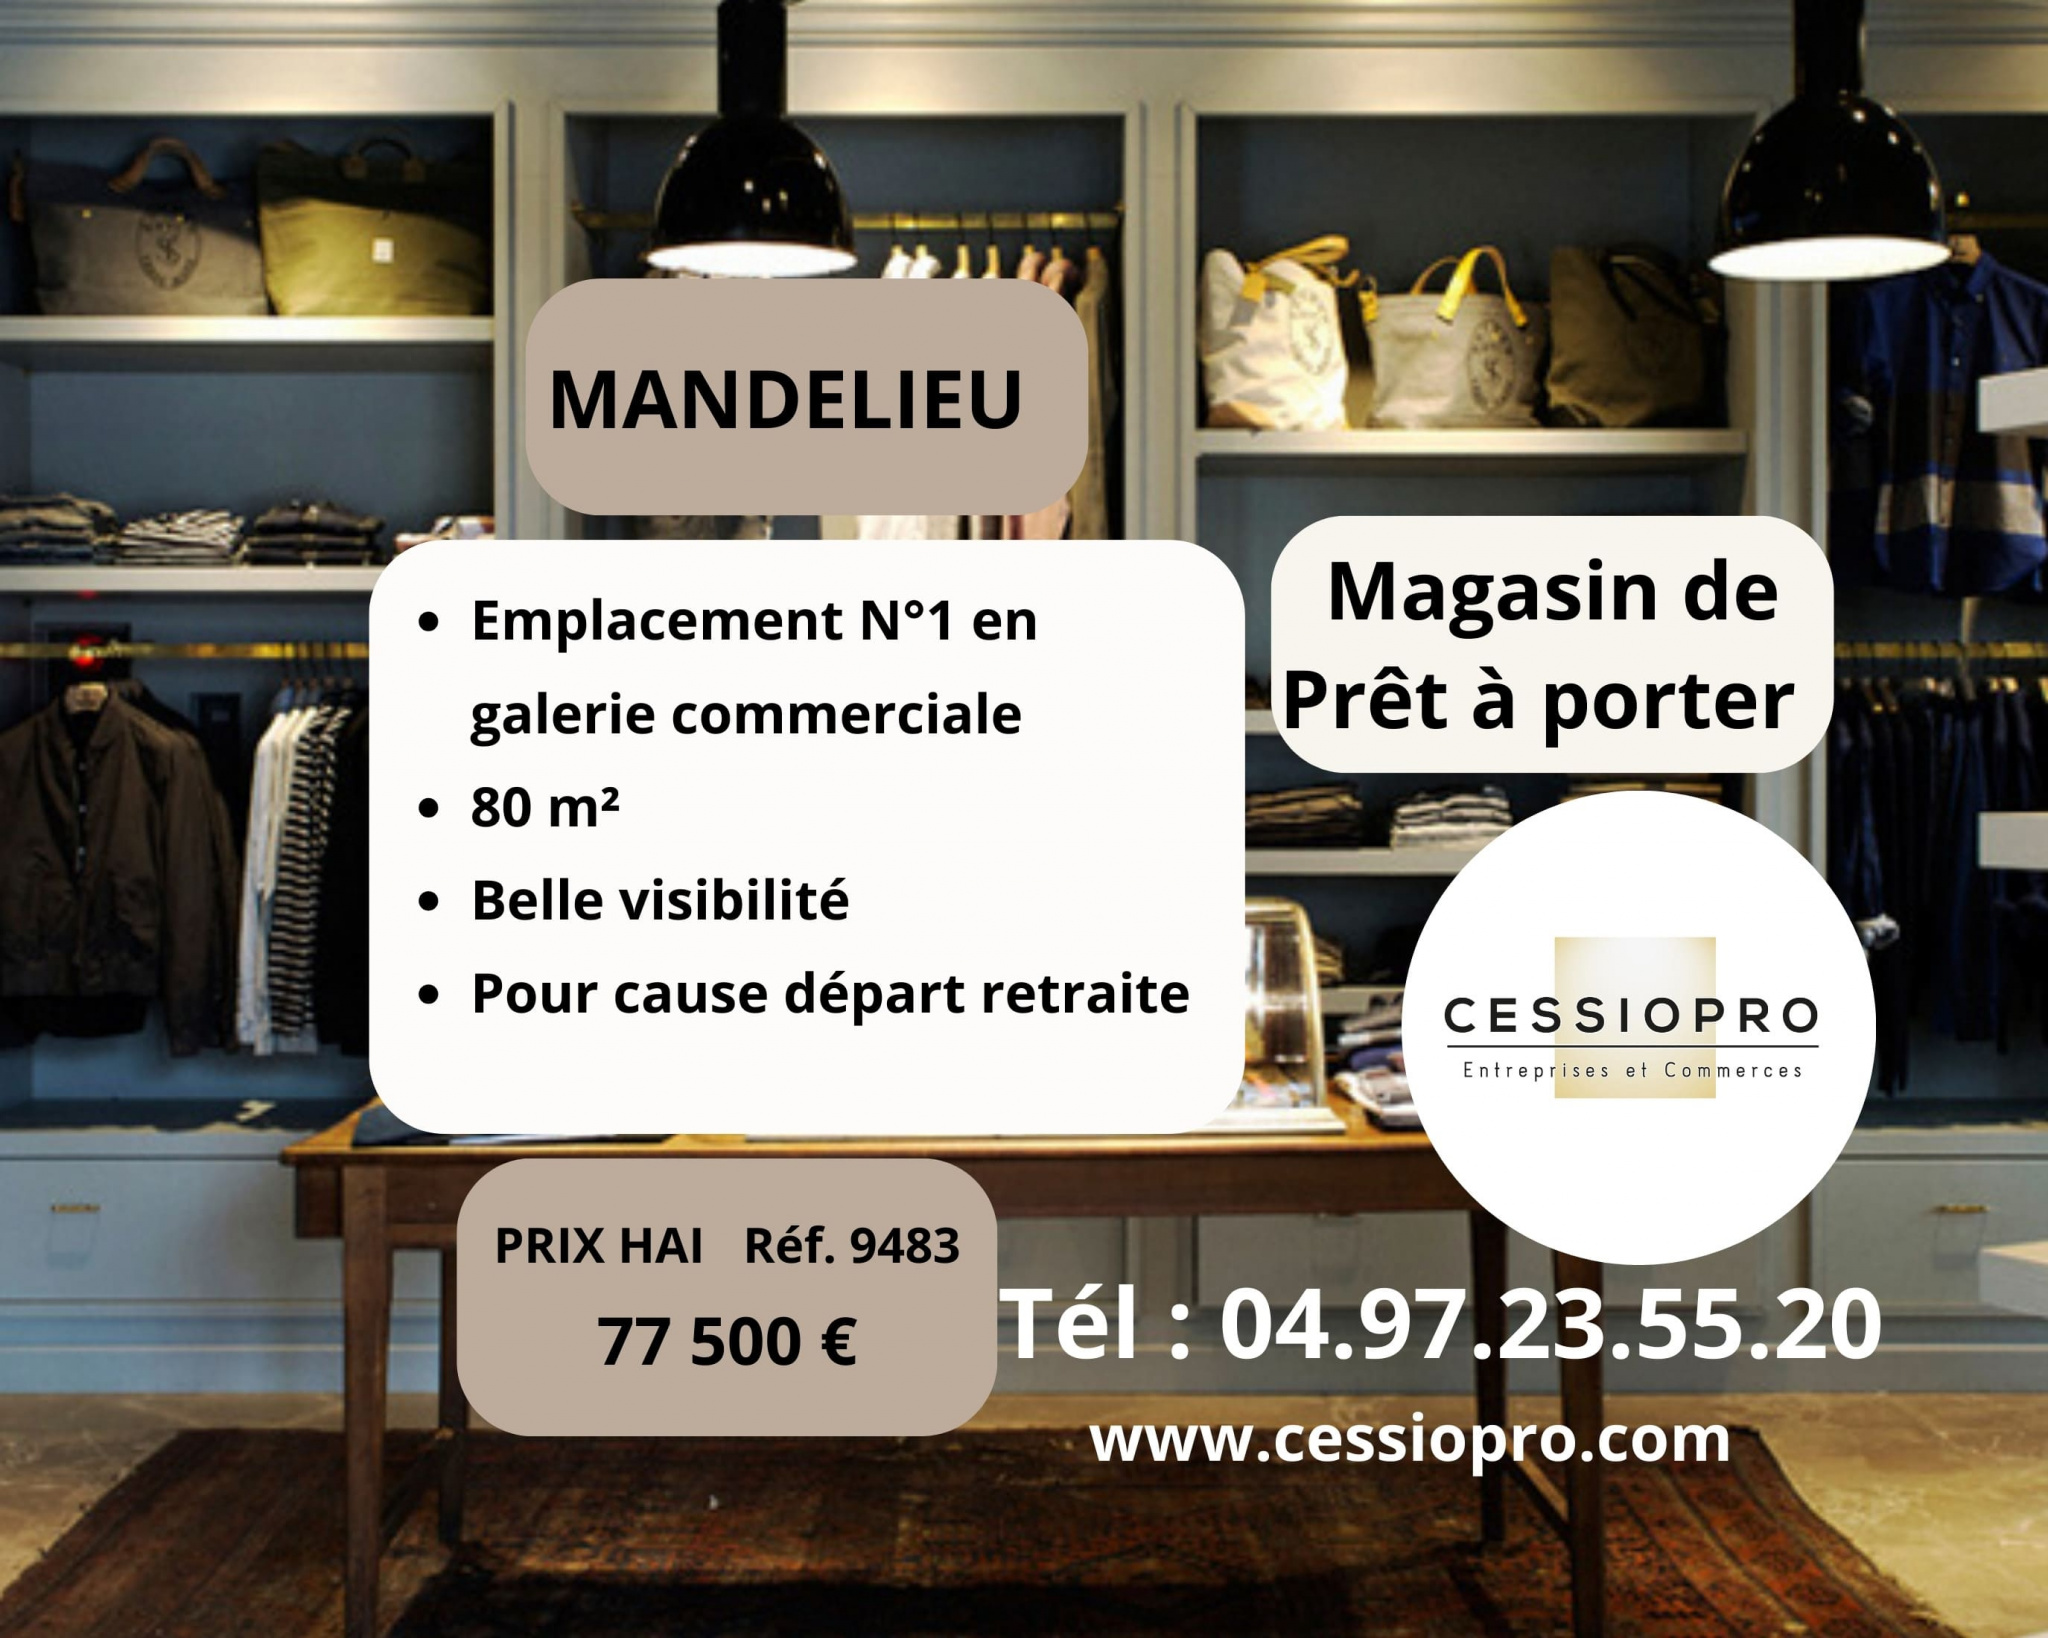 A vendre Fonds de commerce 80m² Mandelieu-la-Napoule